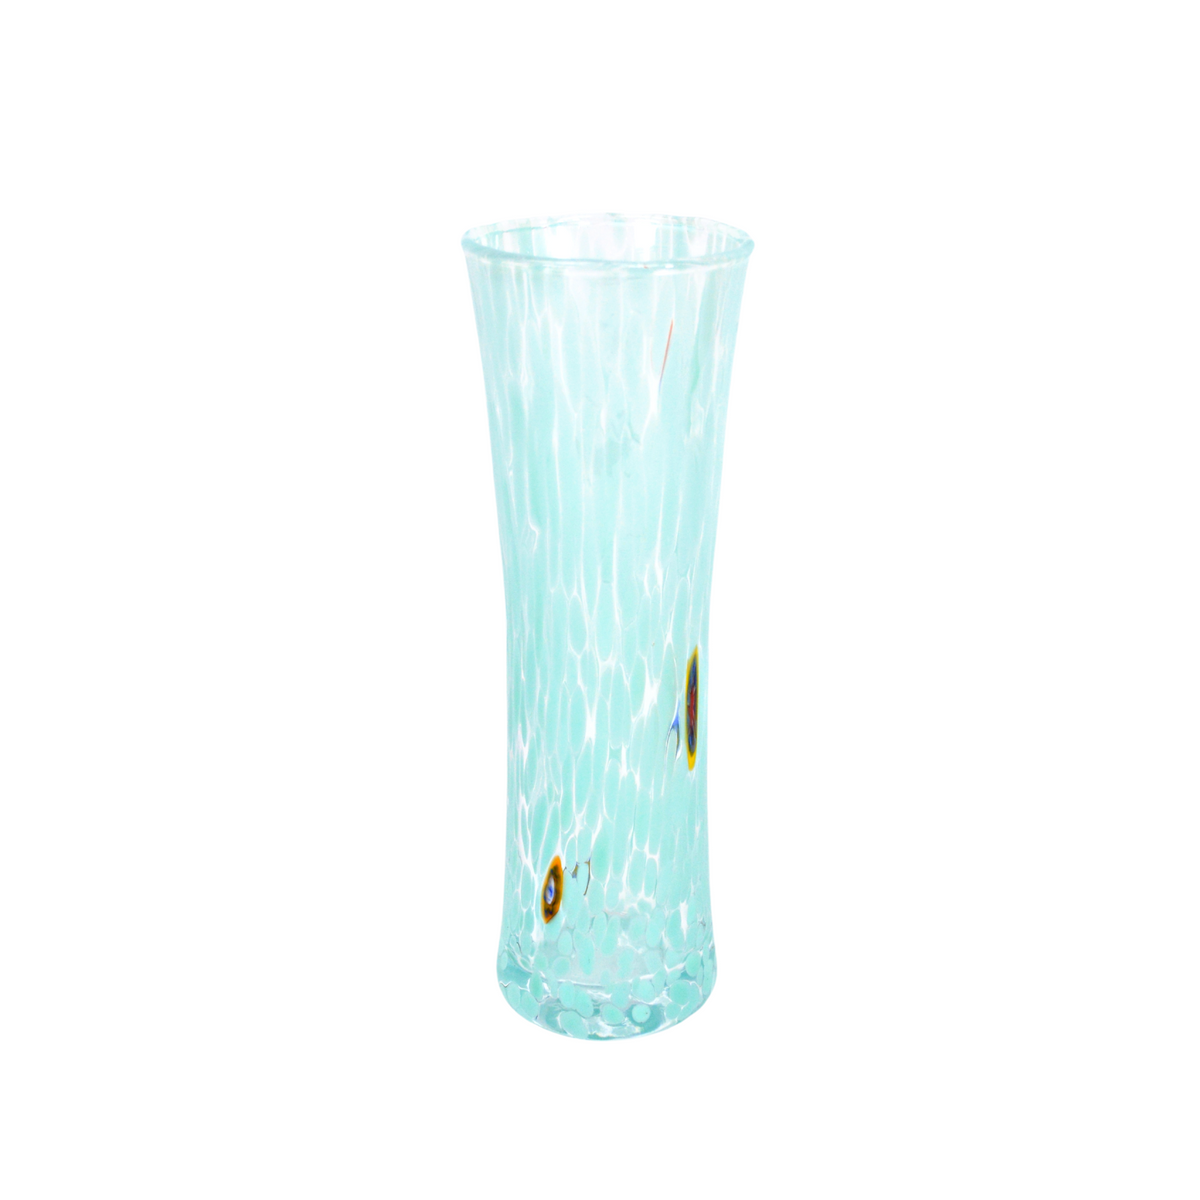 Murano Glass Bud Vase, Contemporary, Made in Italy - My Italian Decor